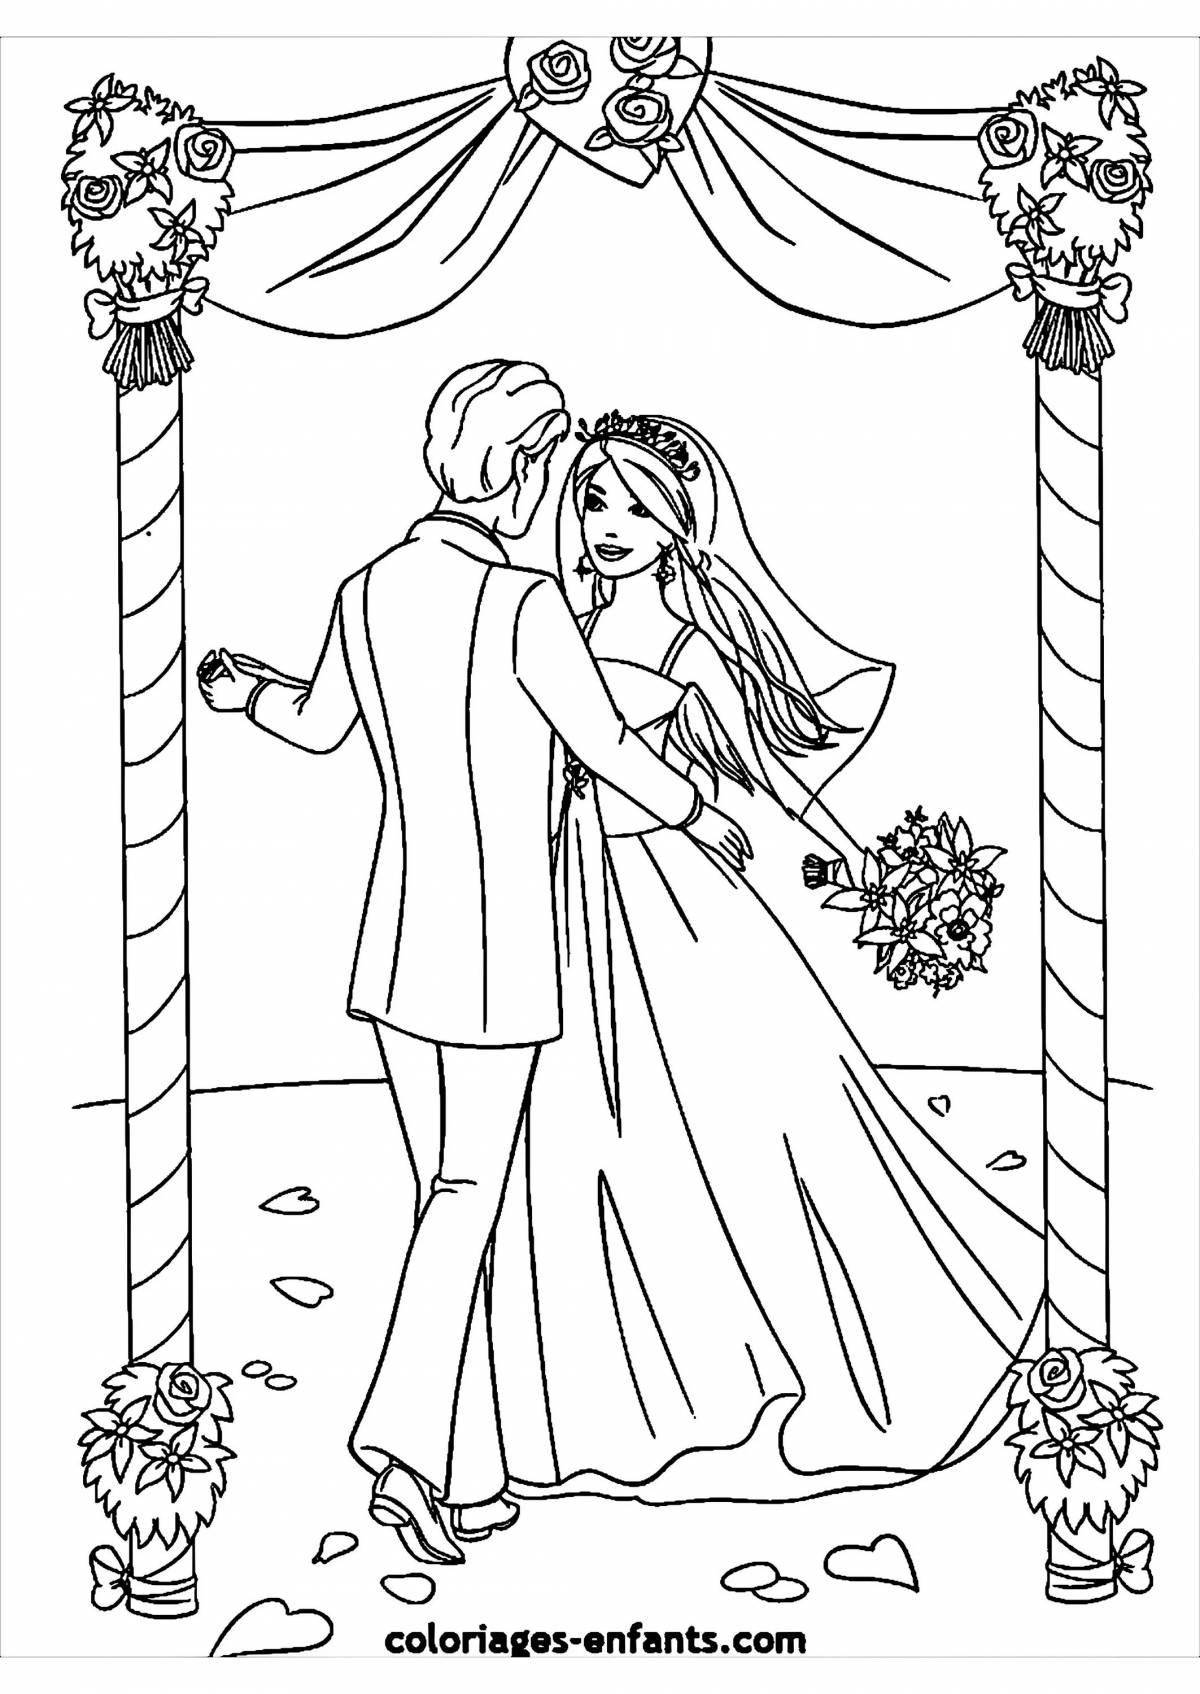 Раскраска буйная невеста и жених